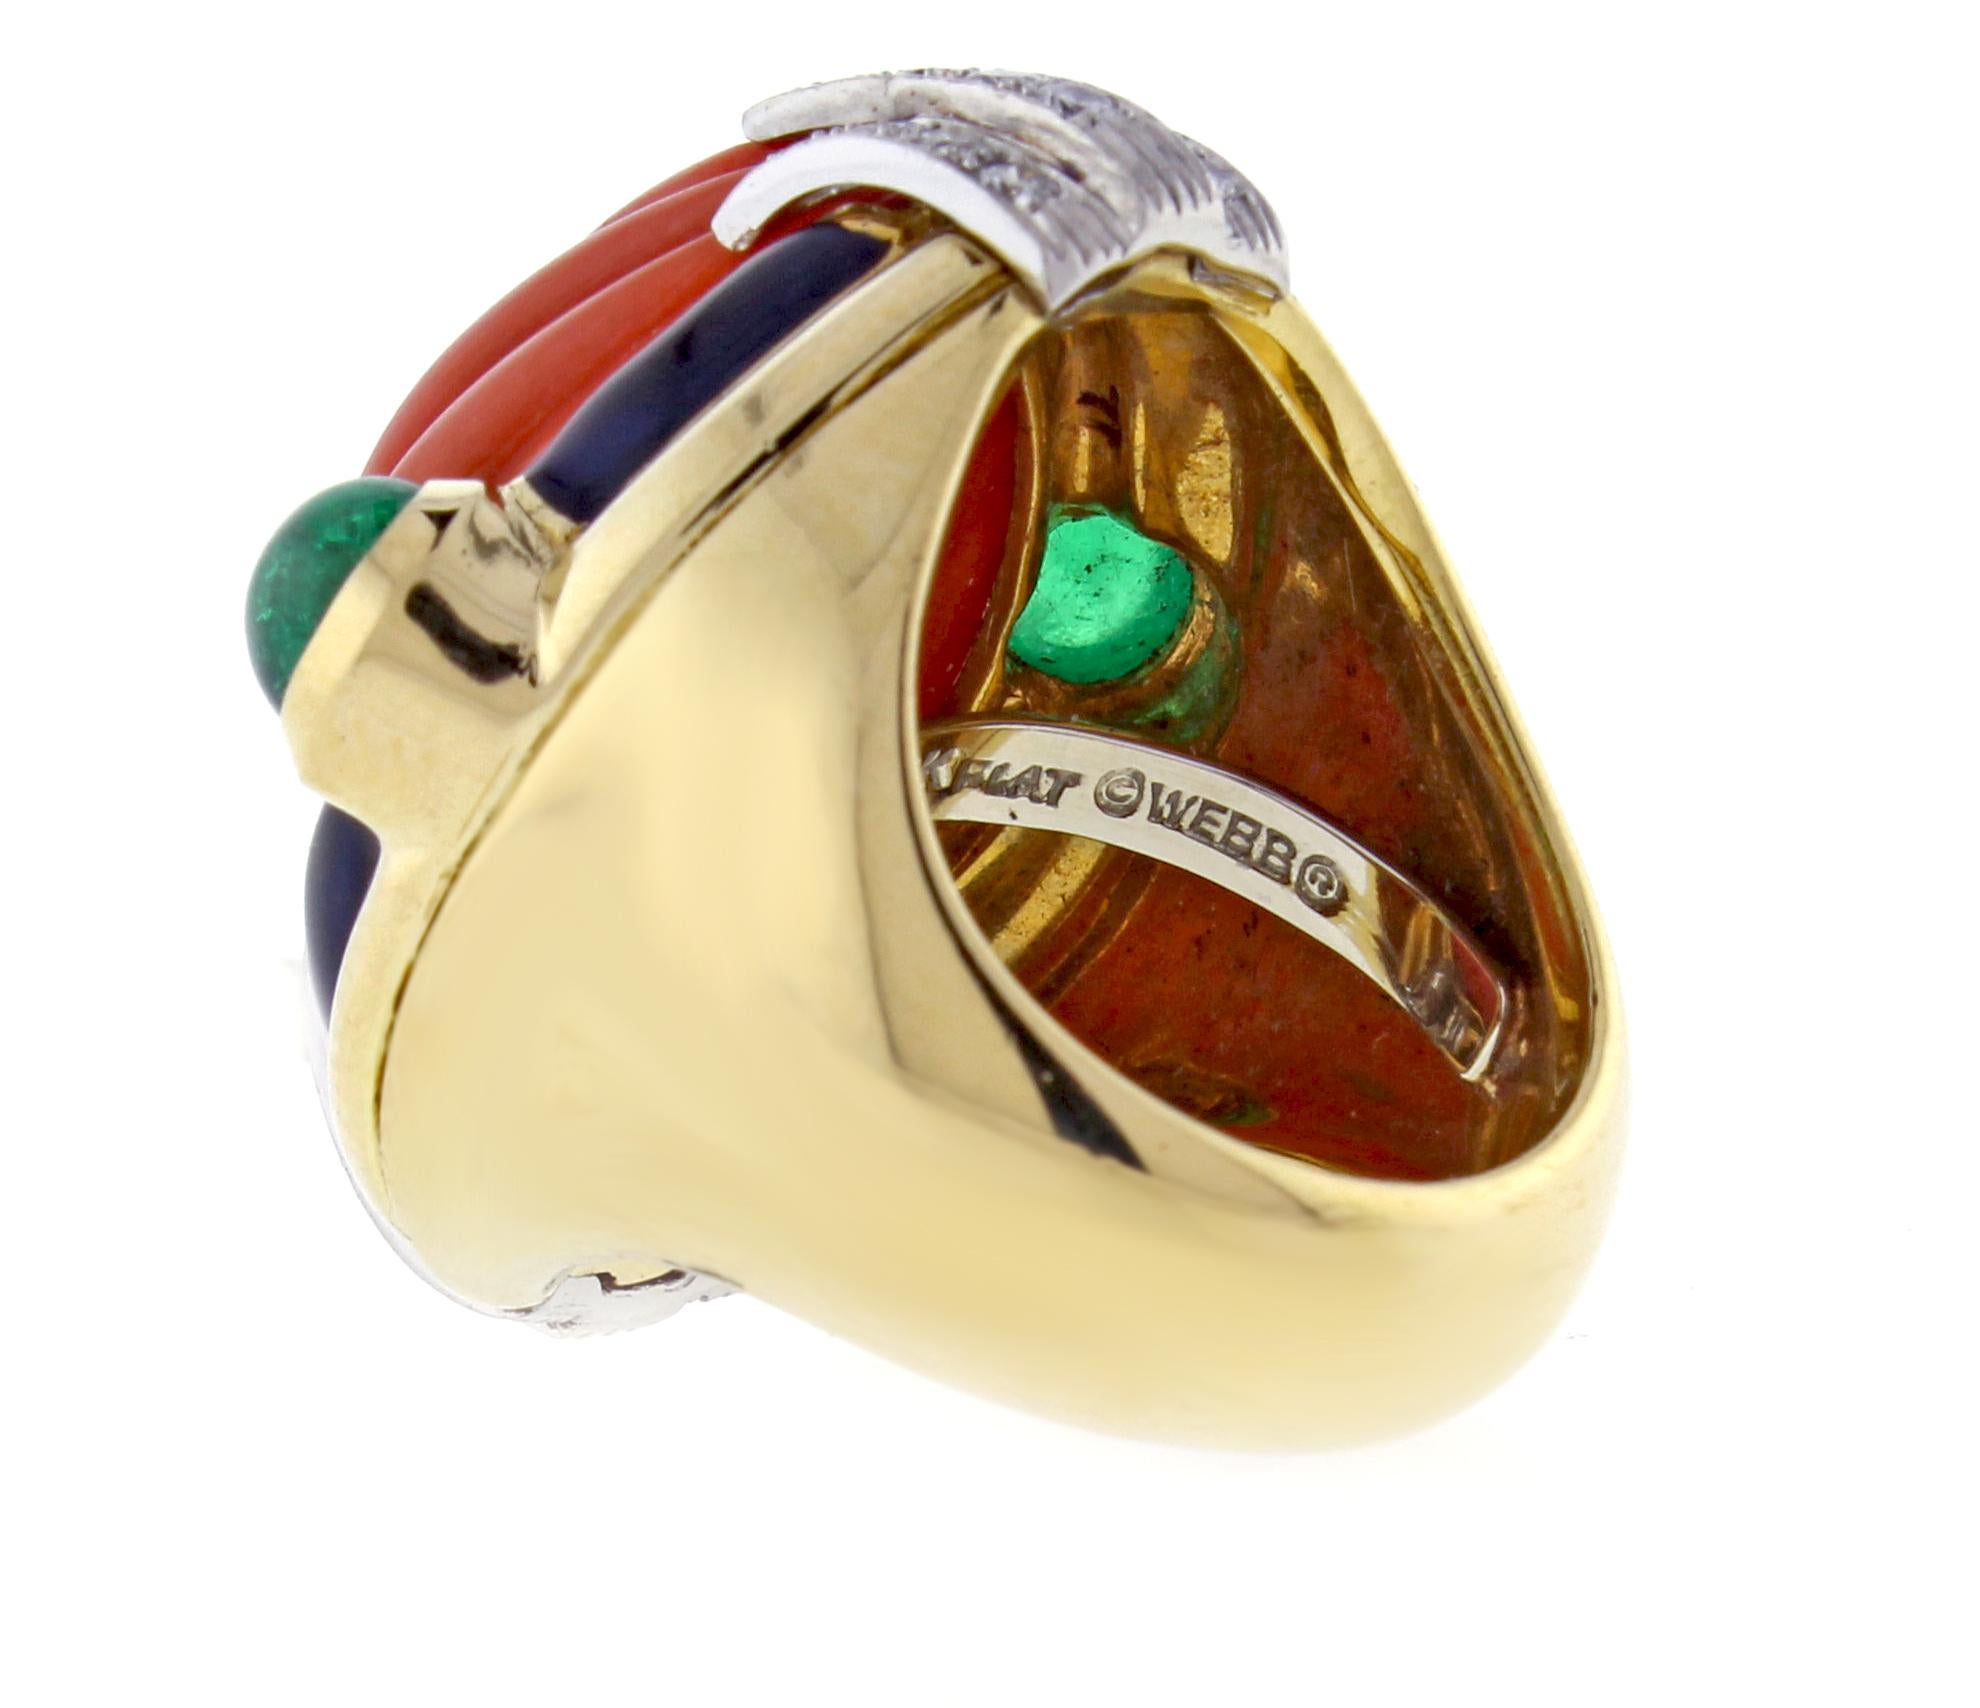 david webb emerald ring